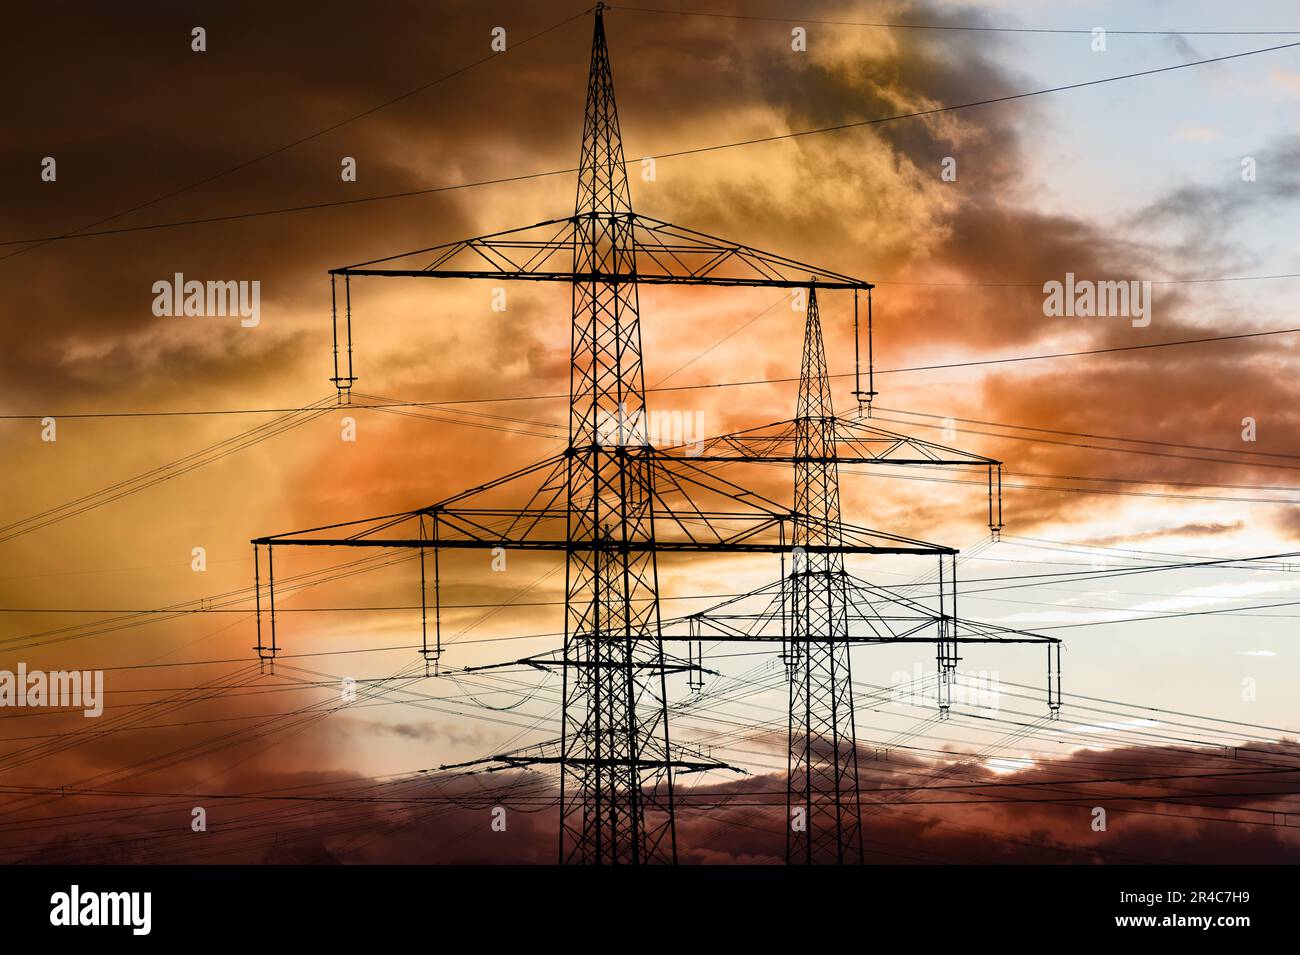 piloni elettrici ad alta tensione contro il cielo con nuvole drammatiche Foto Stock